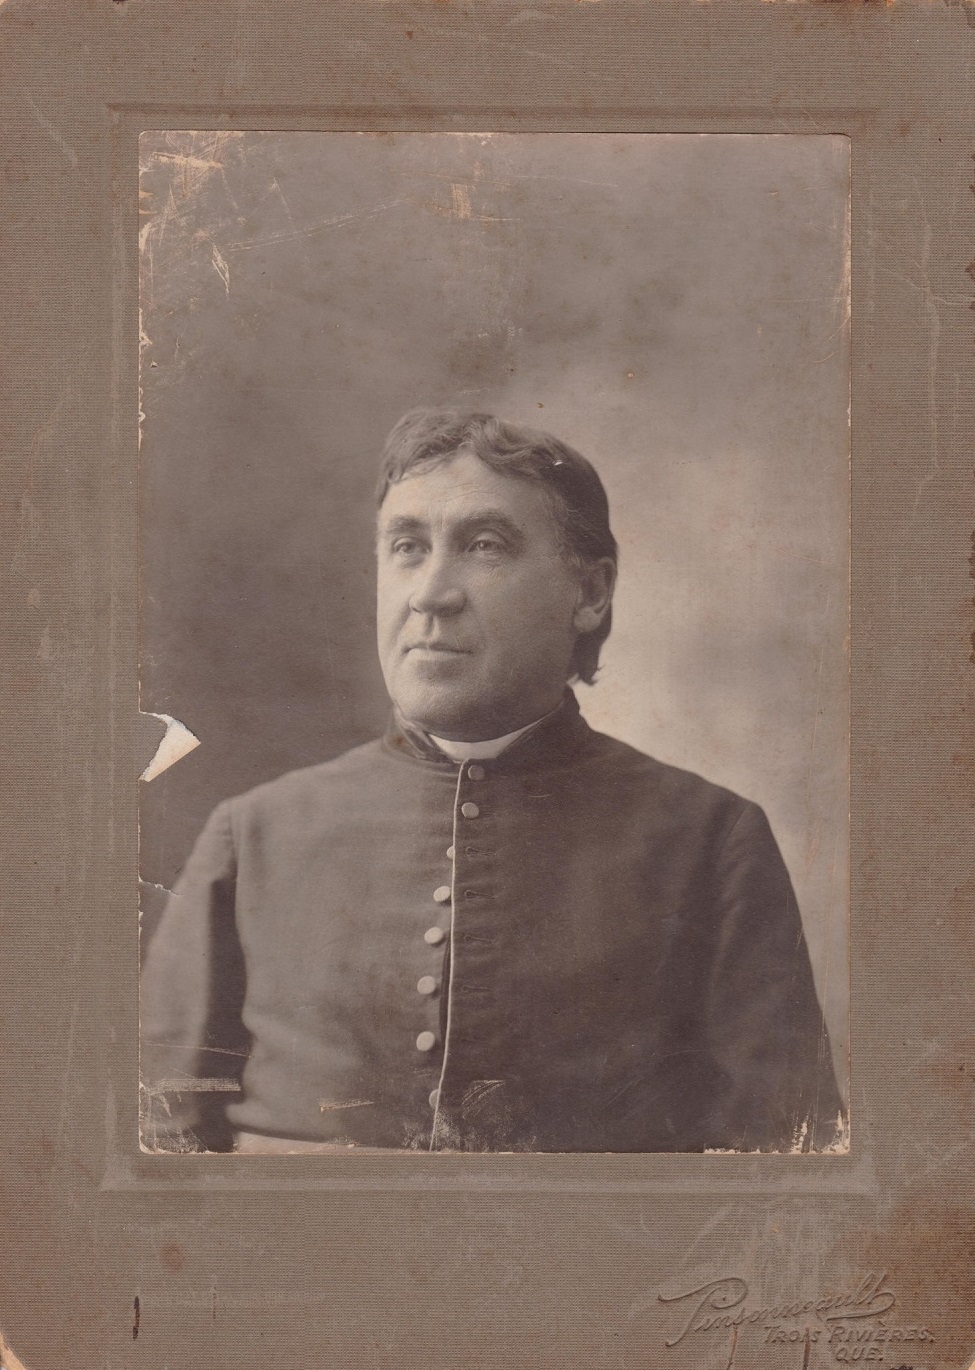 Photographie couleur sepia de Télesphore Laflèche portant une soutane.